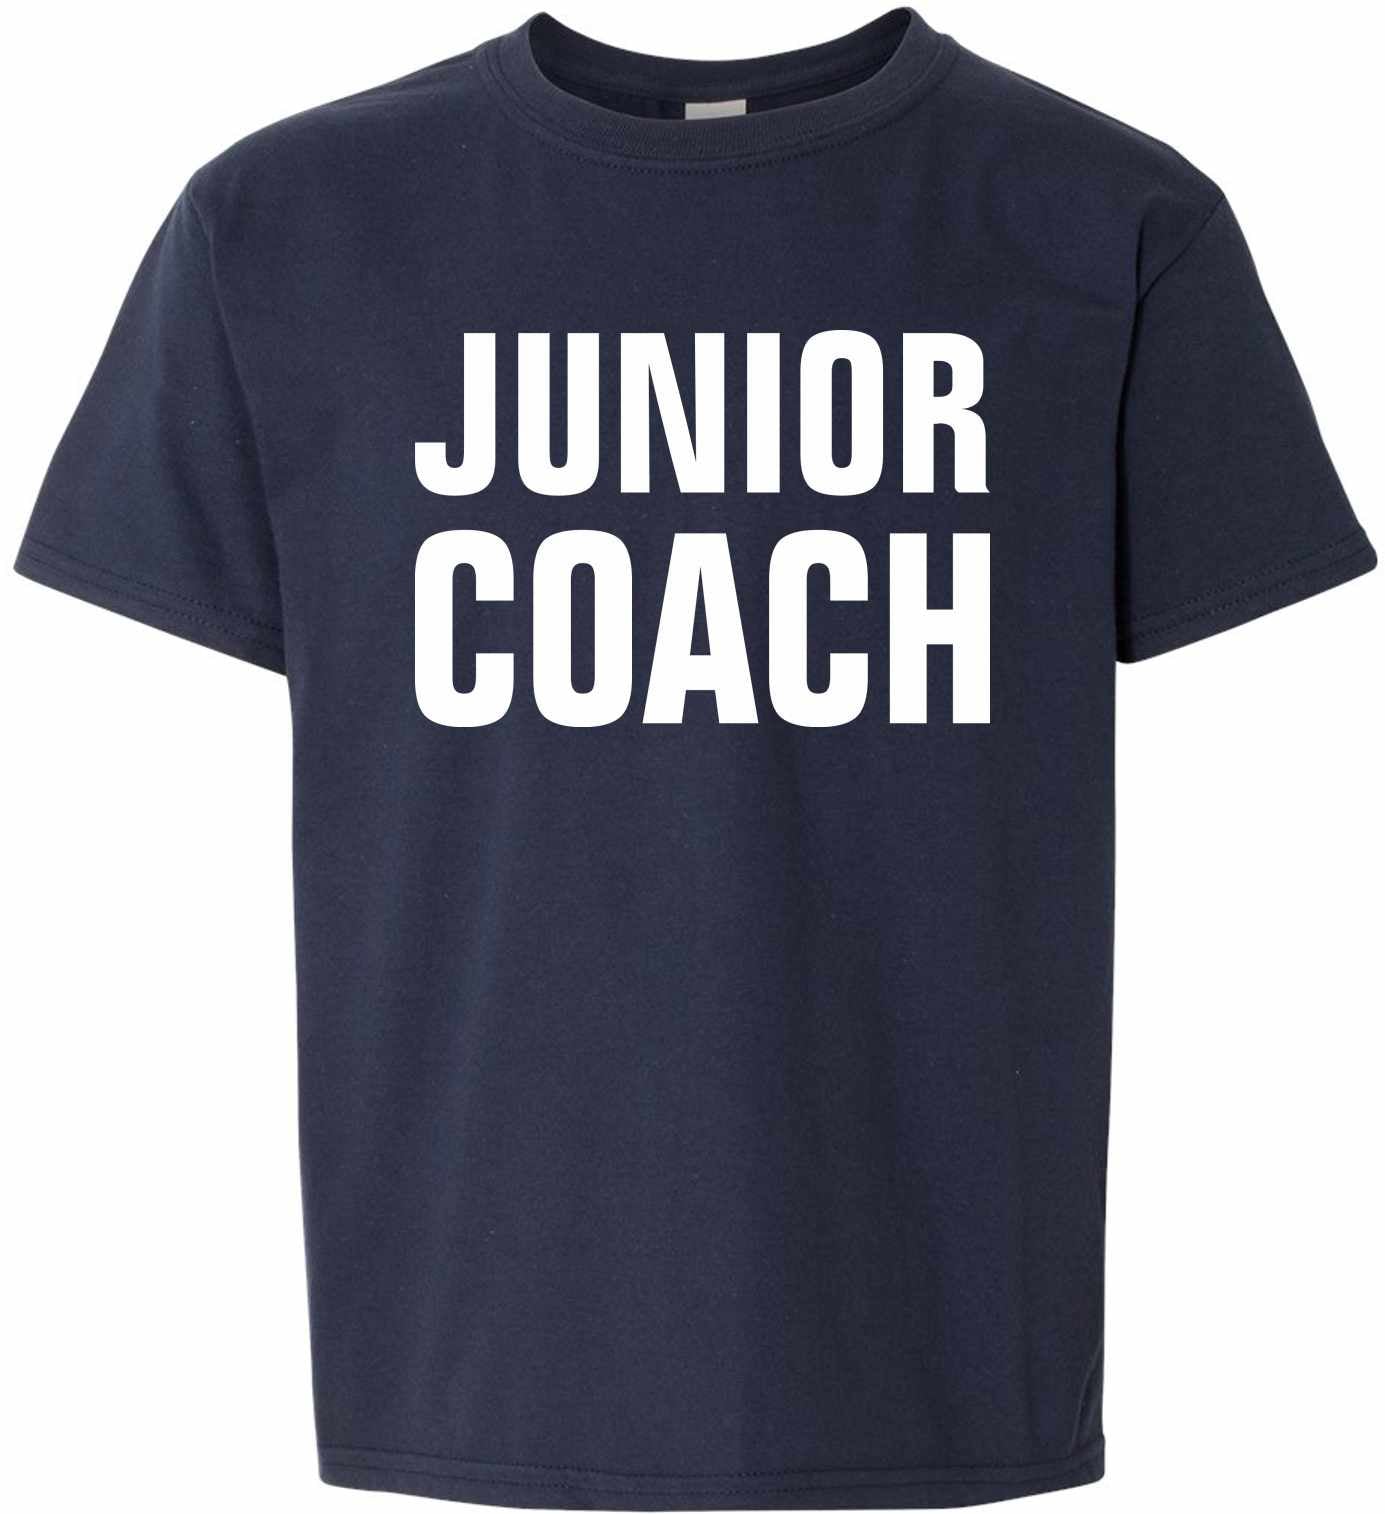 Junior Coach on Kids T-Shirt (#1213-201)